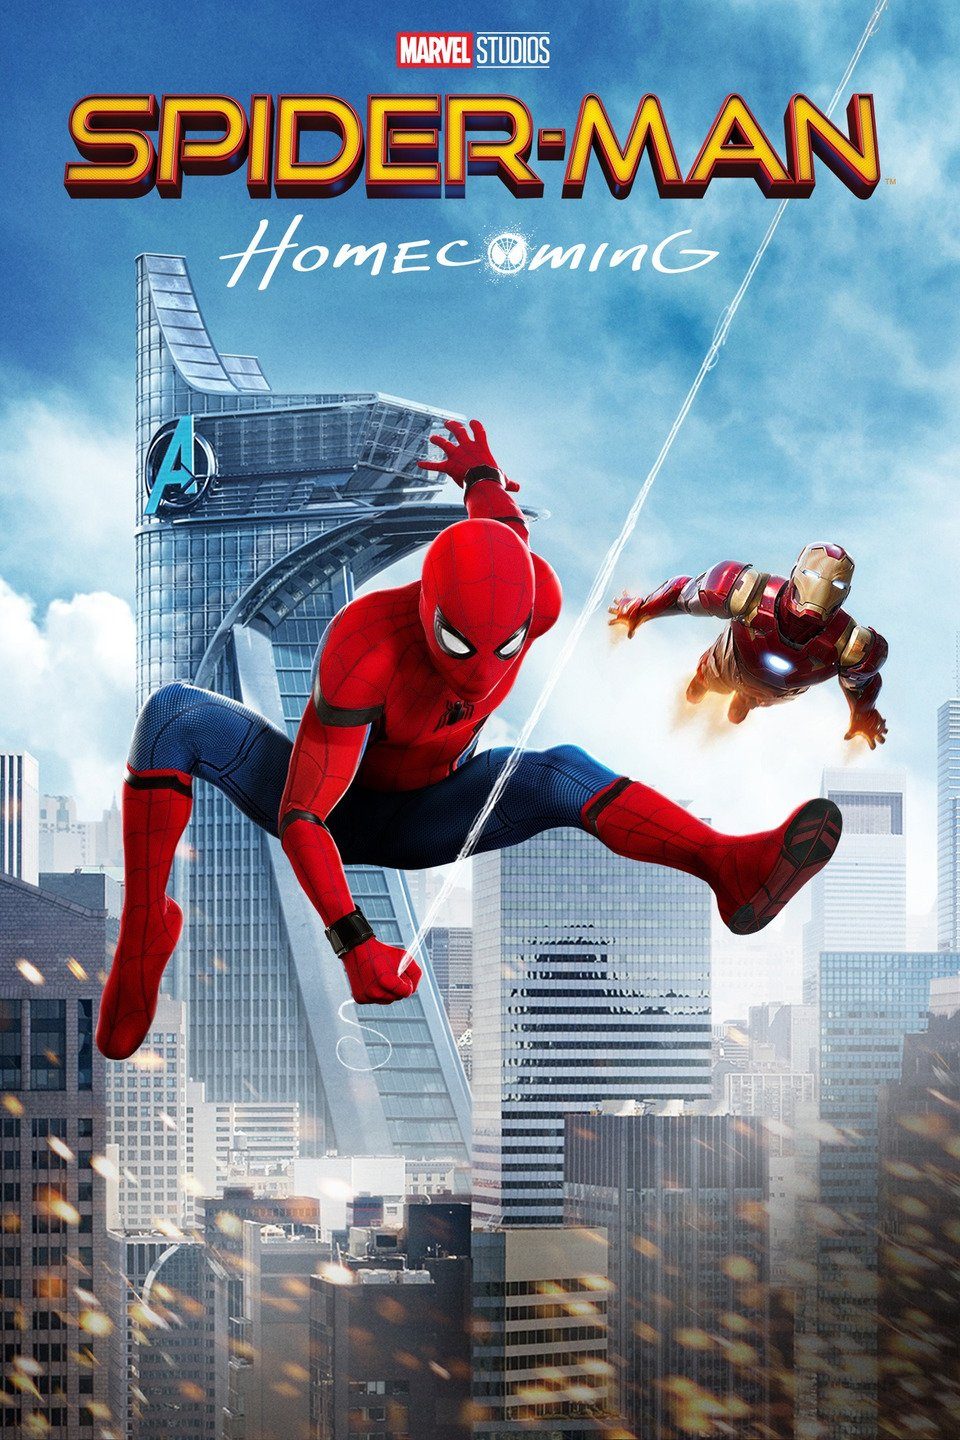 Hinh anh dai dien cua phim Homecoming e1588666783381 - Spider Man: Homecoming và sự trở lại hoành tráng của thương hiệu tỷ đô